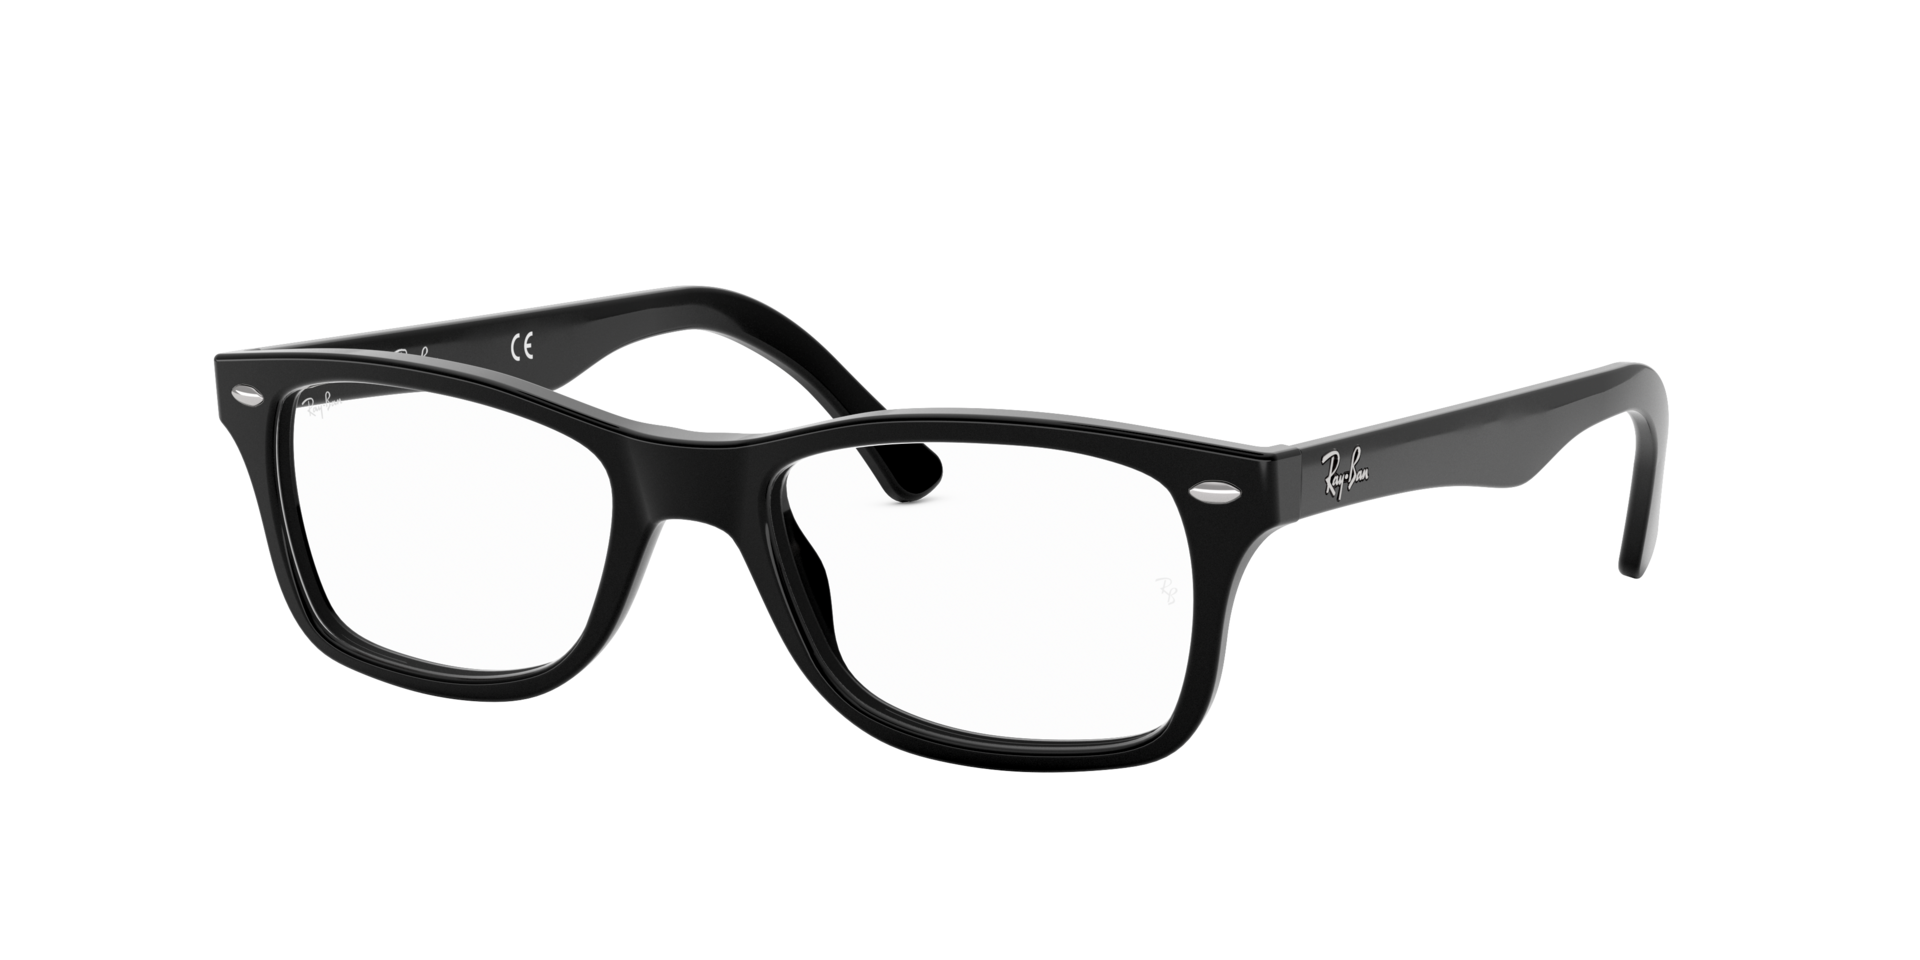 Ray-Ban Rx RX5228 plastic square women's eyeglasses